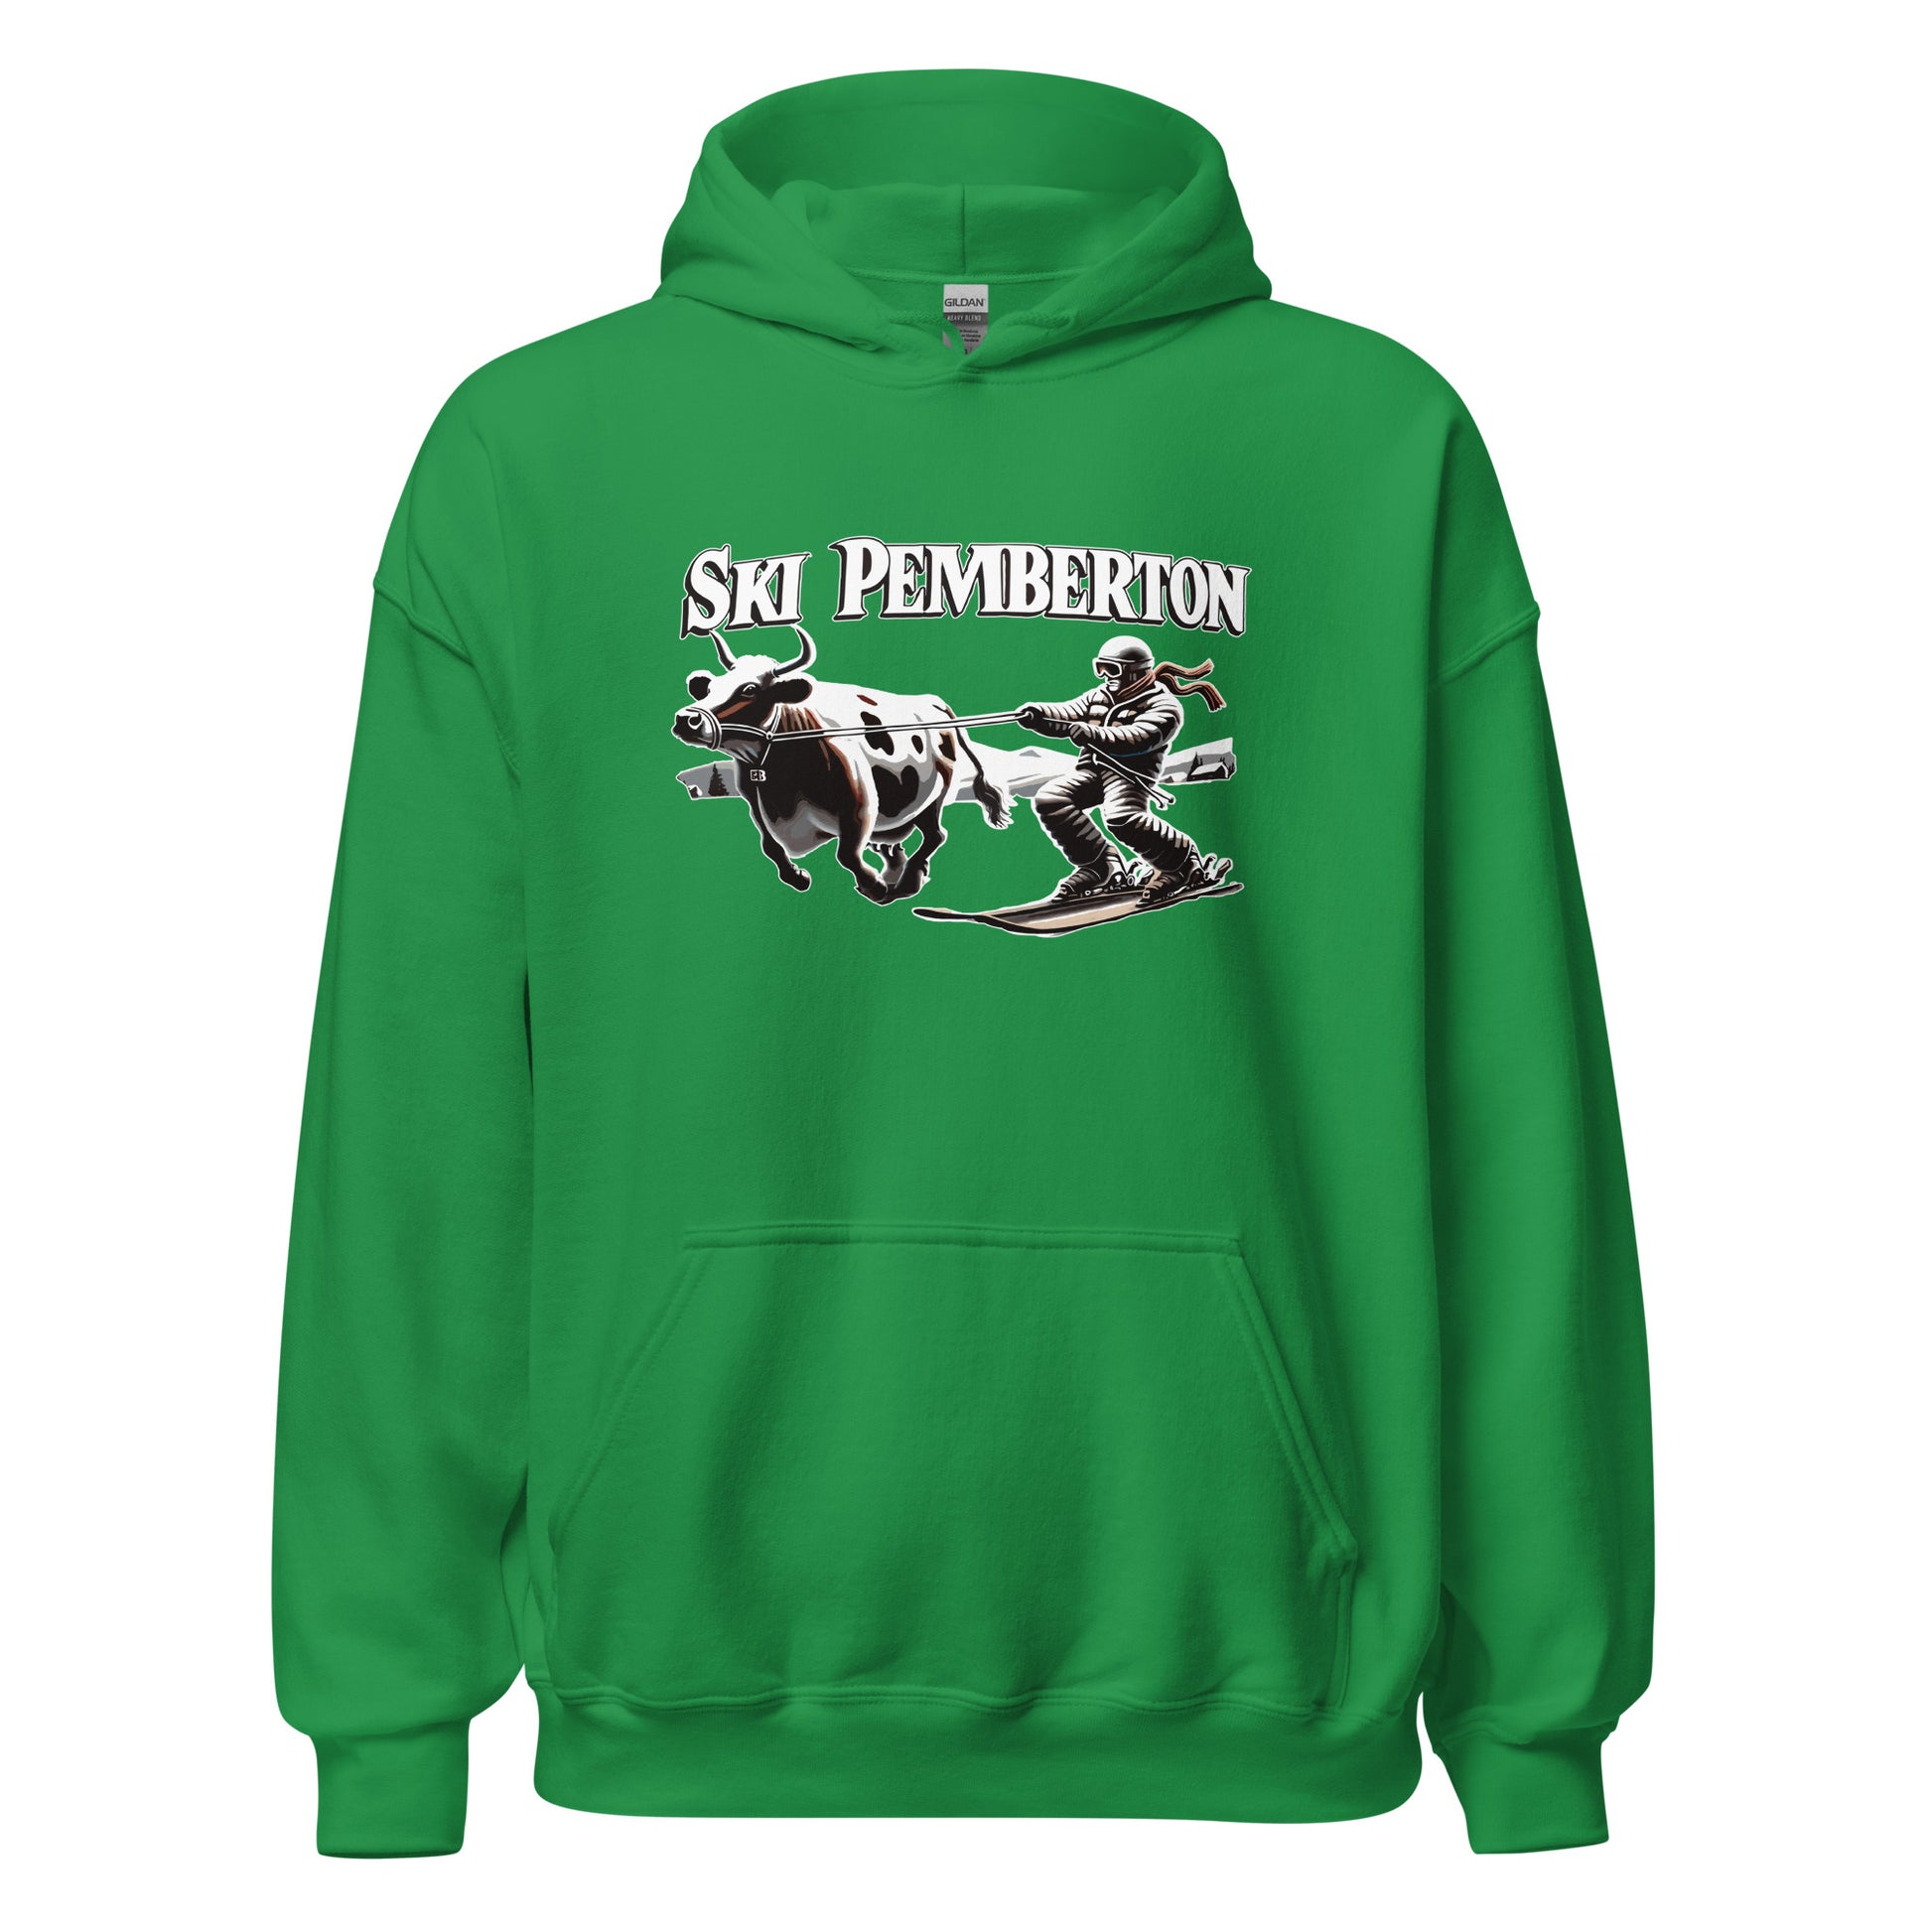 Ski Pemberton Hoodie printed by Whistler Shirts